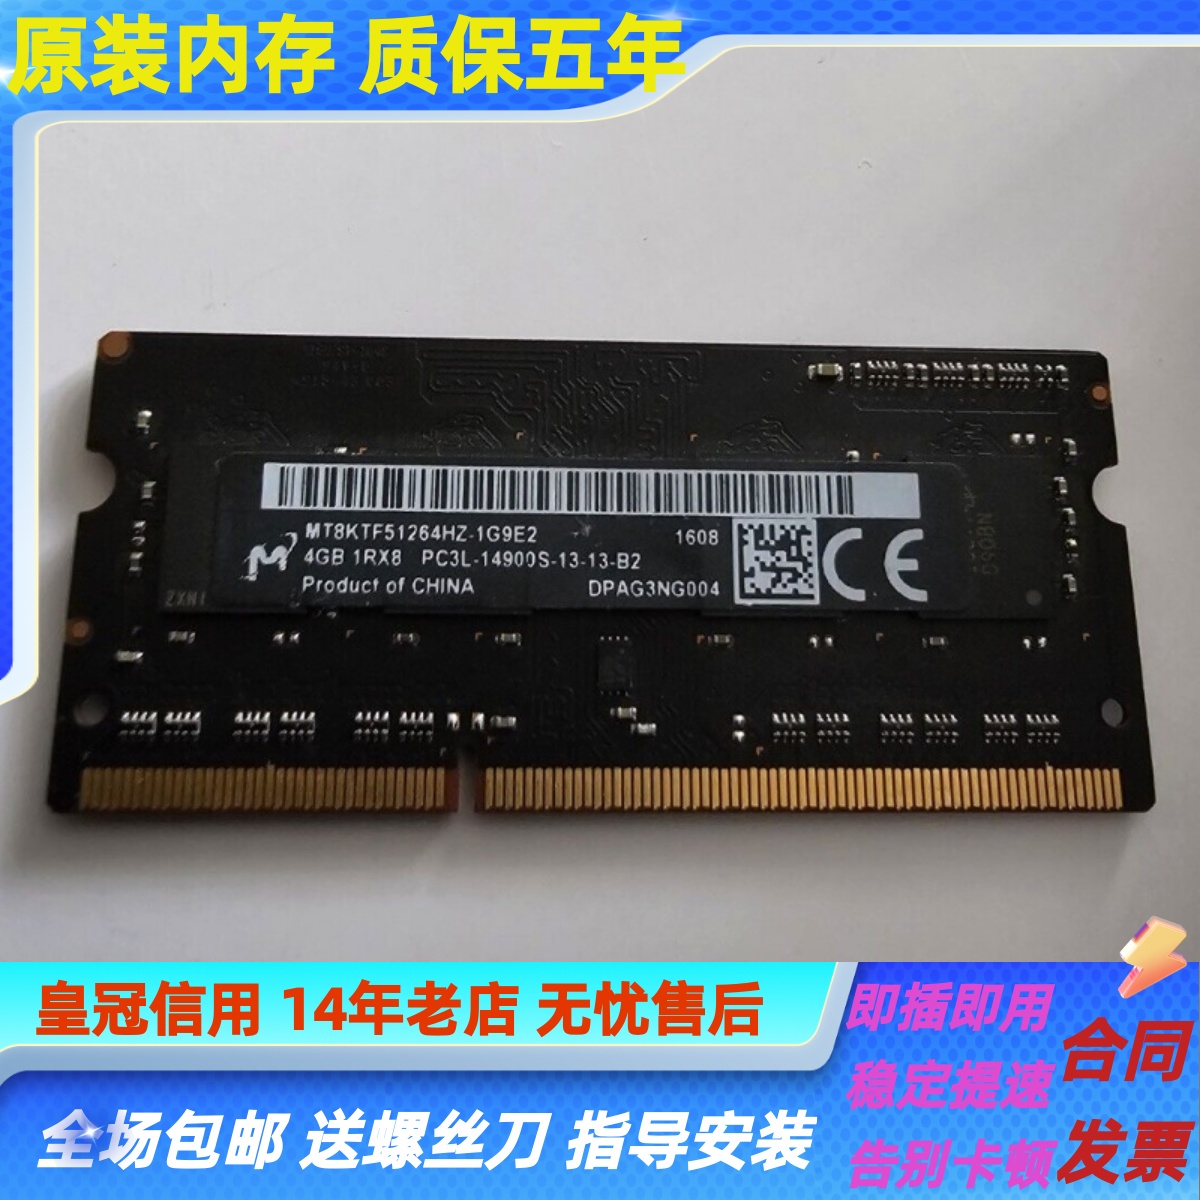 DDR3 内存条：8 颗粒与 16 颗粒版本的显著差异及适用场景  第4张